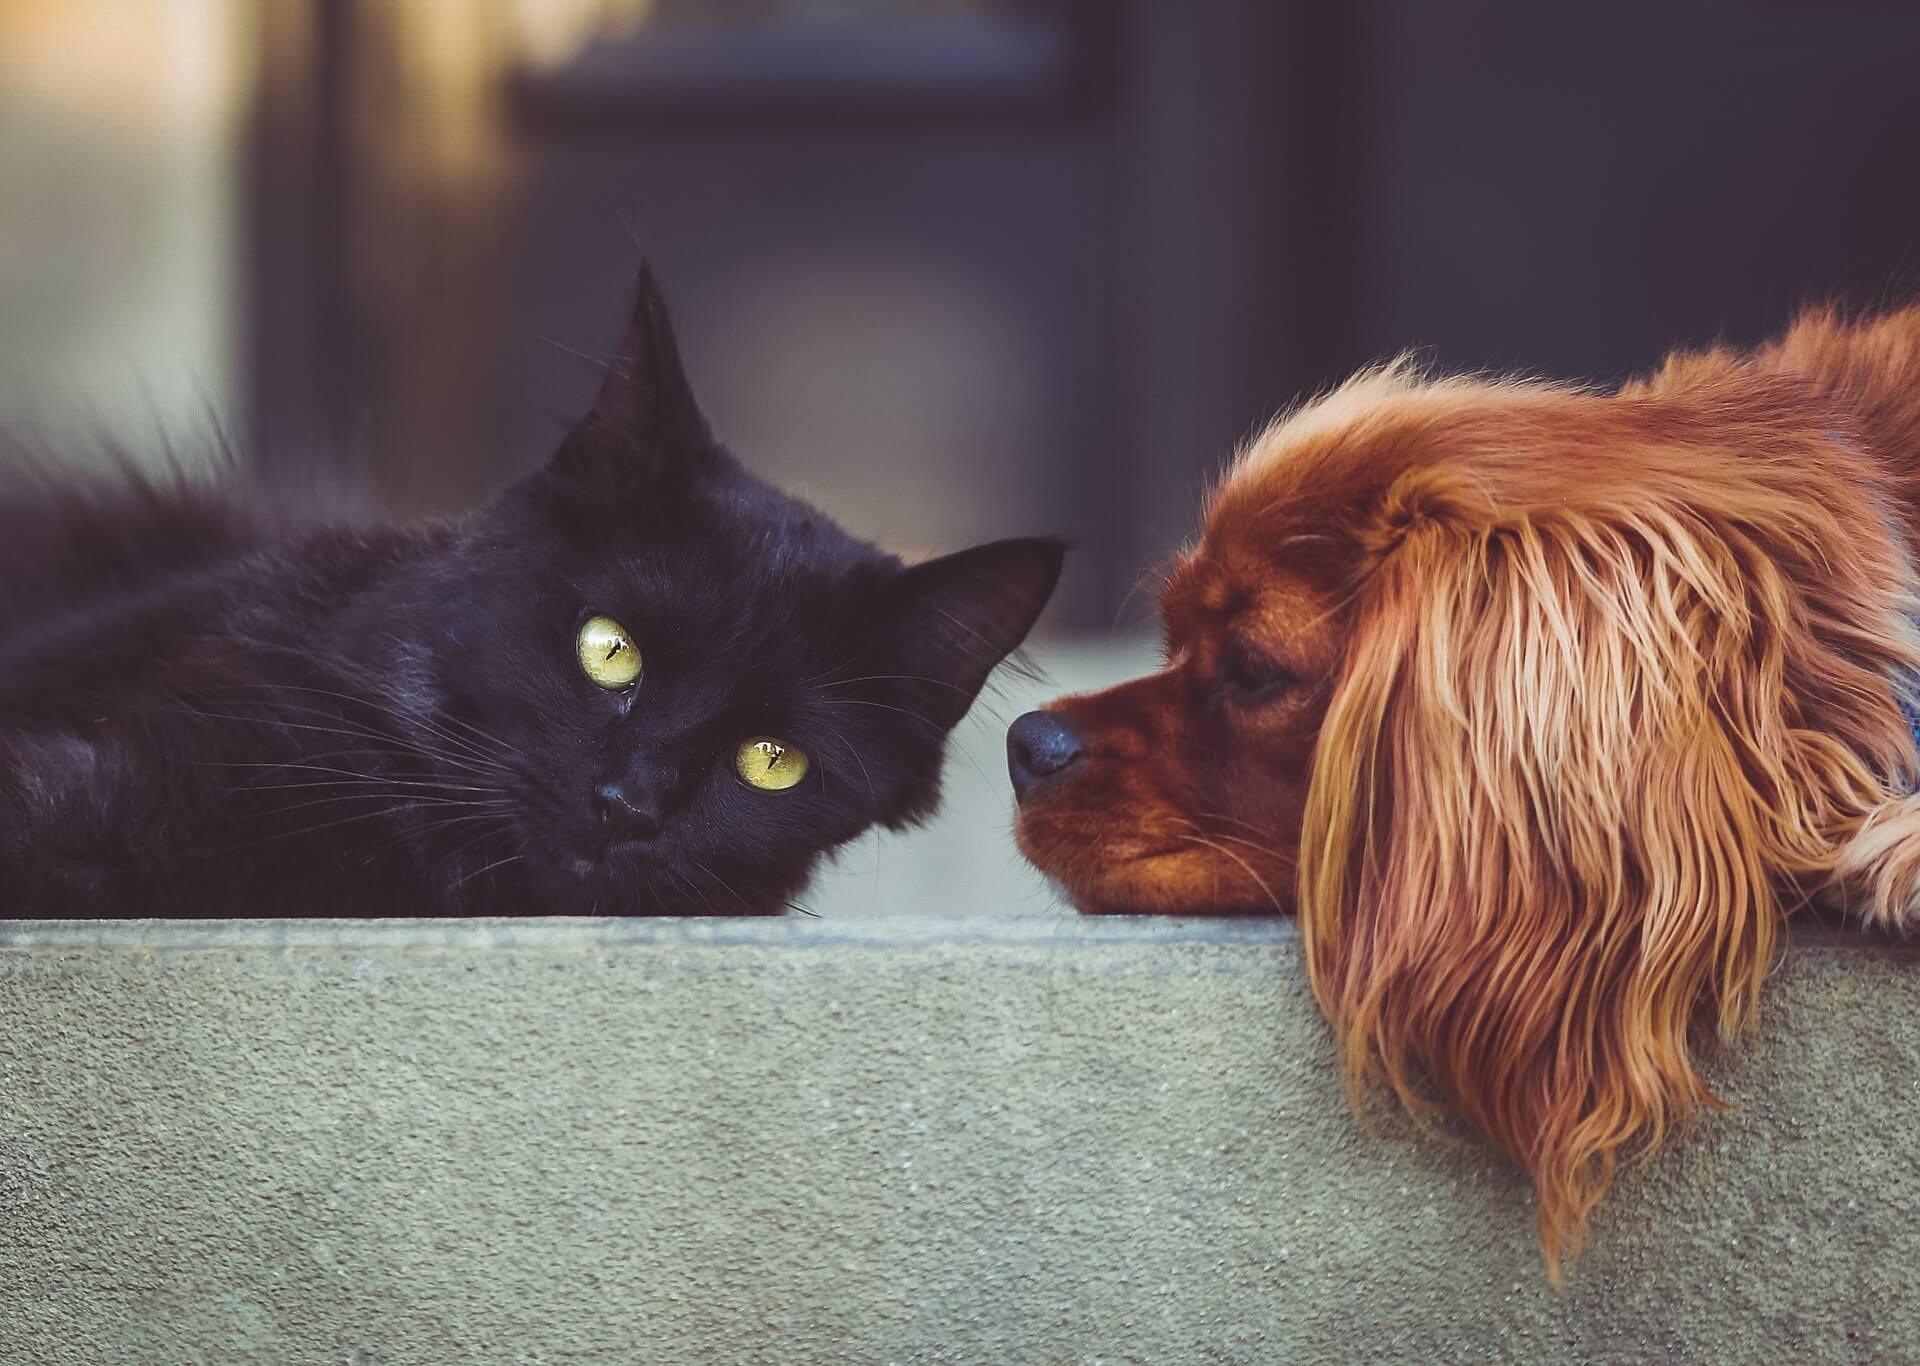 problemas com animais do vizinho 2 - imagem de um gato preto com olhos amarelos e um cão marrom ao seu lado direto, ambos sobre um sofá cinza